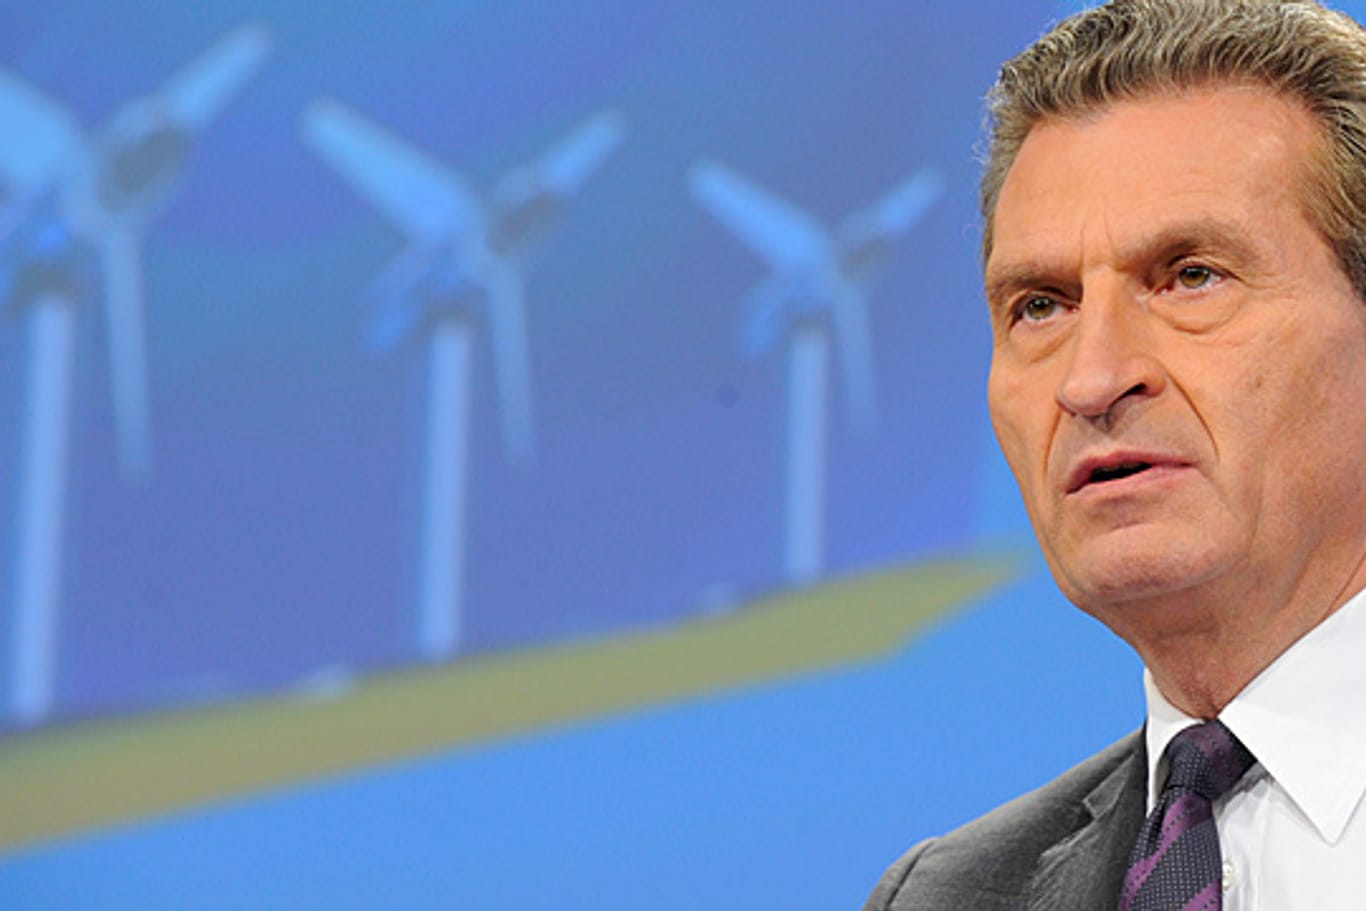 EU-Energiekommissar Günther Oettinger (CDU) befürwortet den Ausbau von Stromtrassen in Deutschland